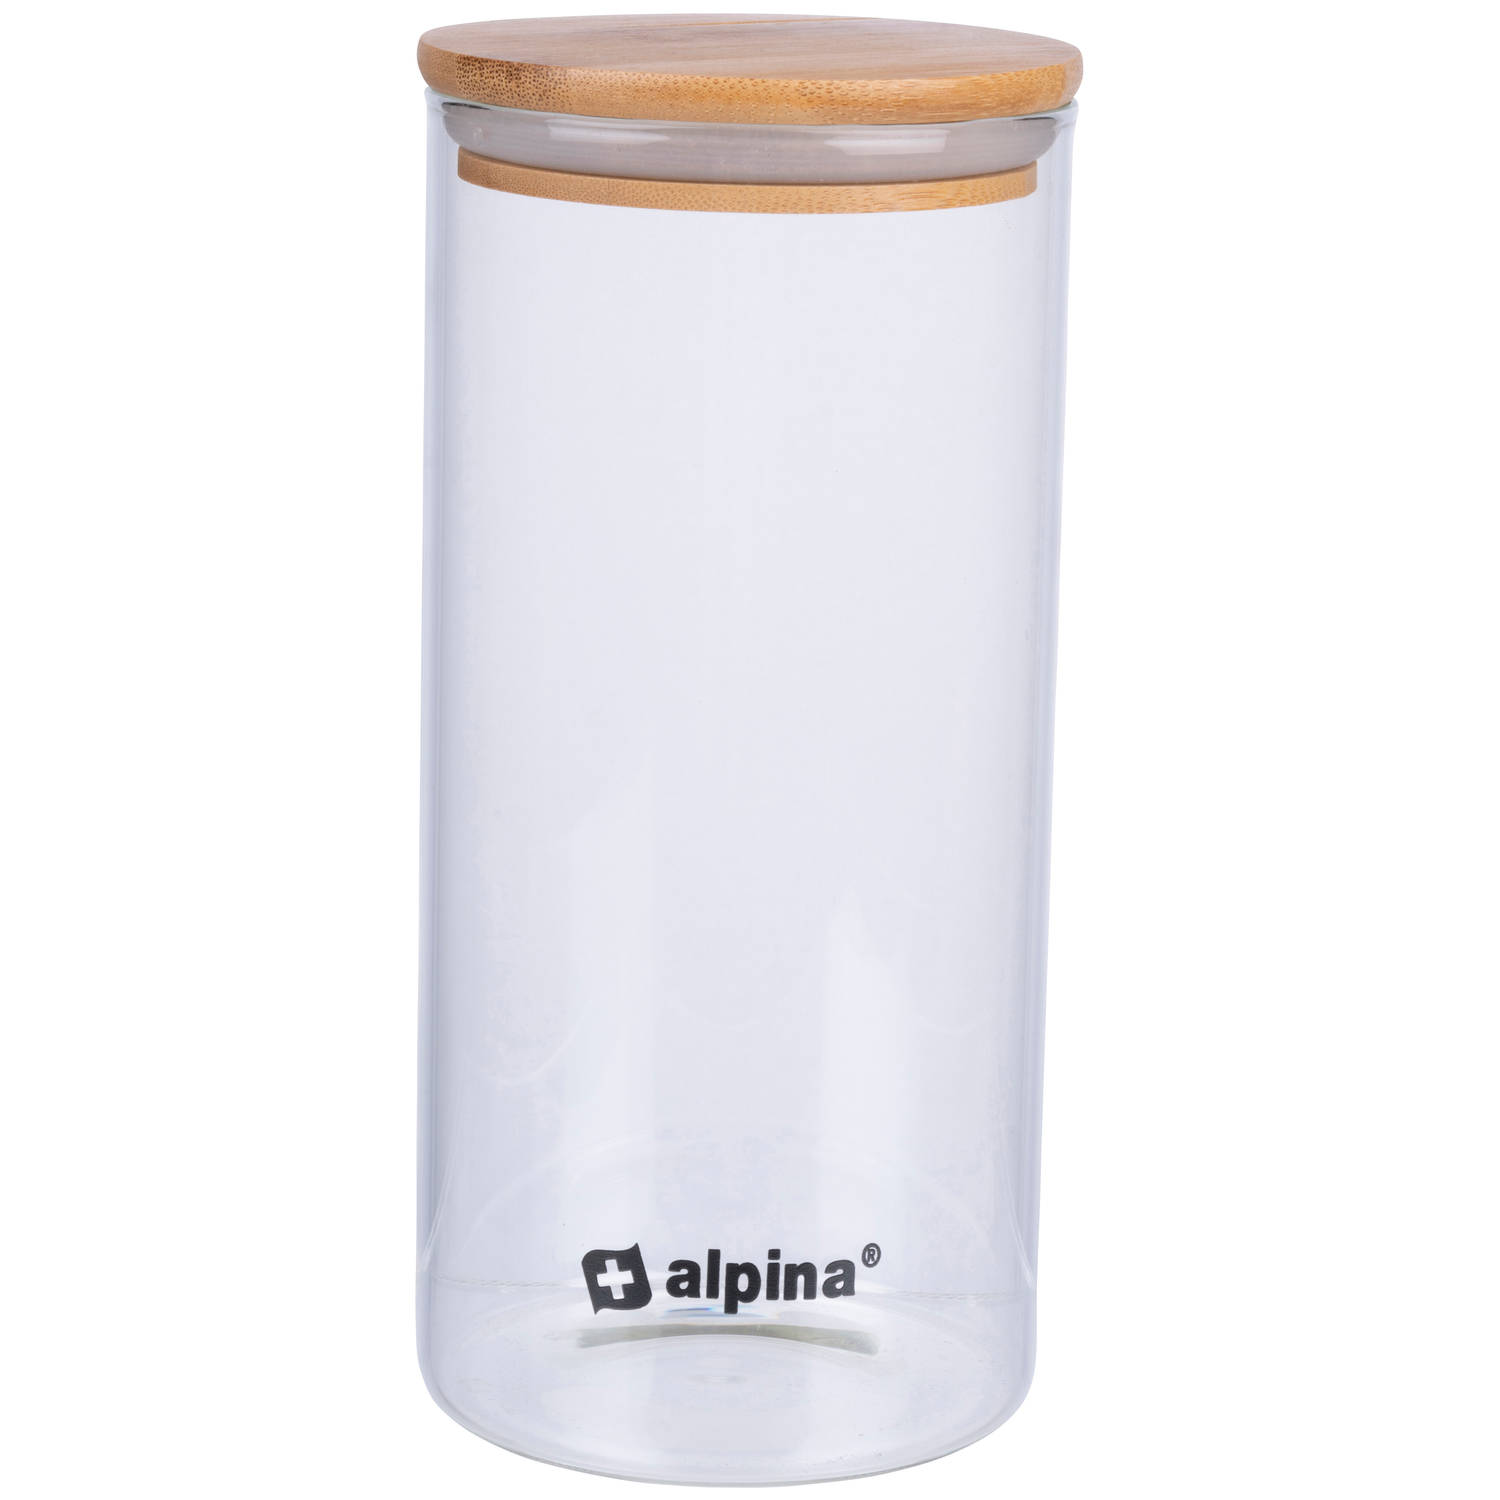 alpina Voorraadpot 1.25L - Glazen Pot met Deksel - Bewaarpot van Borosilicaatglas/Bamboe